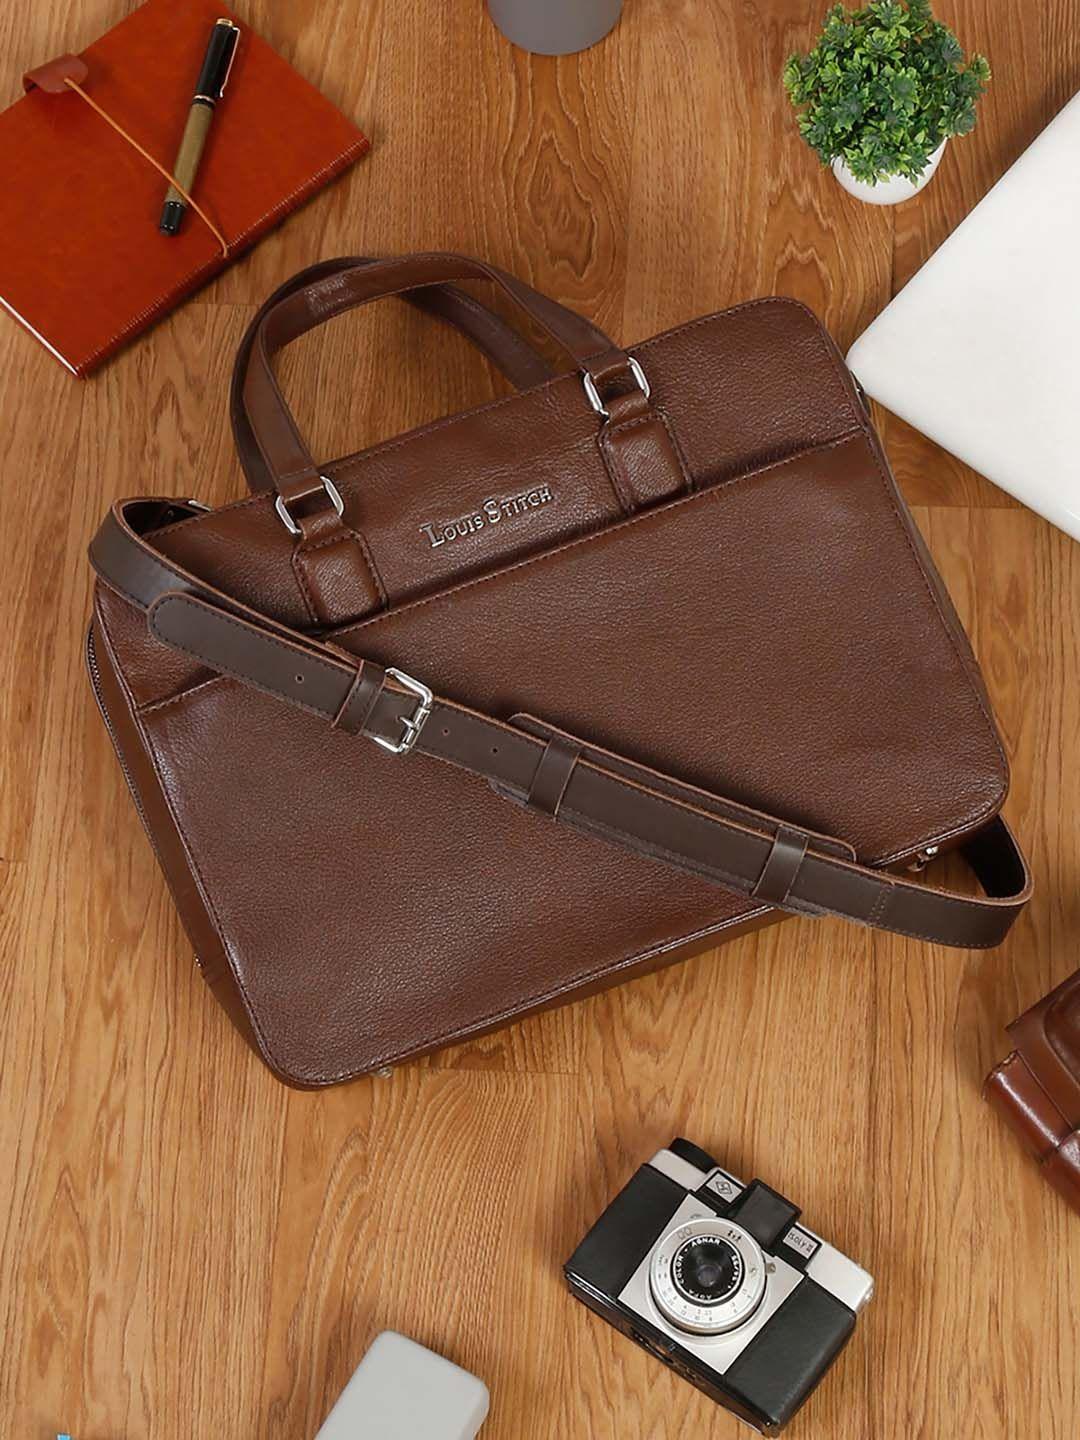 louis stitch unisex leather laptop bag